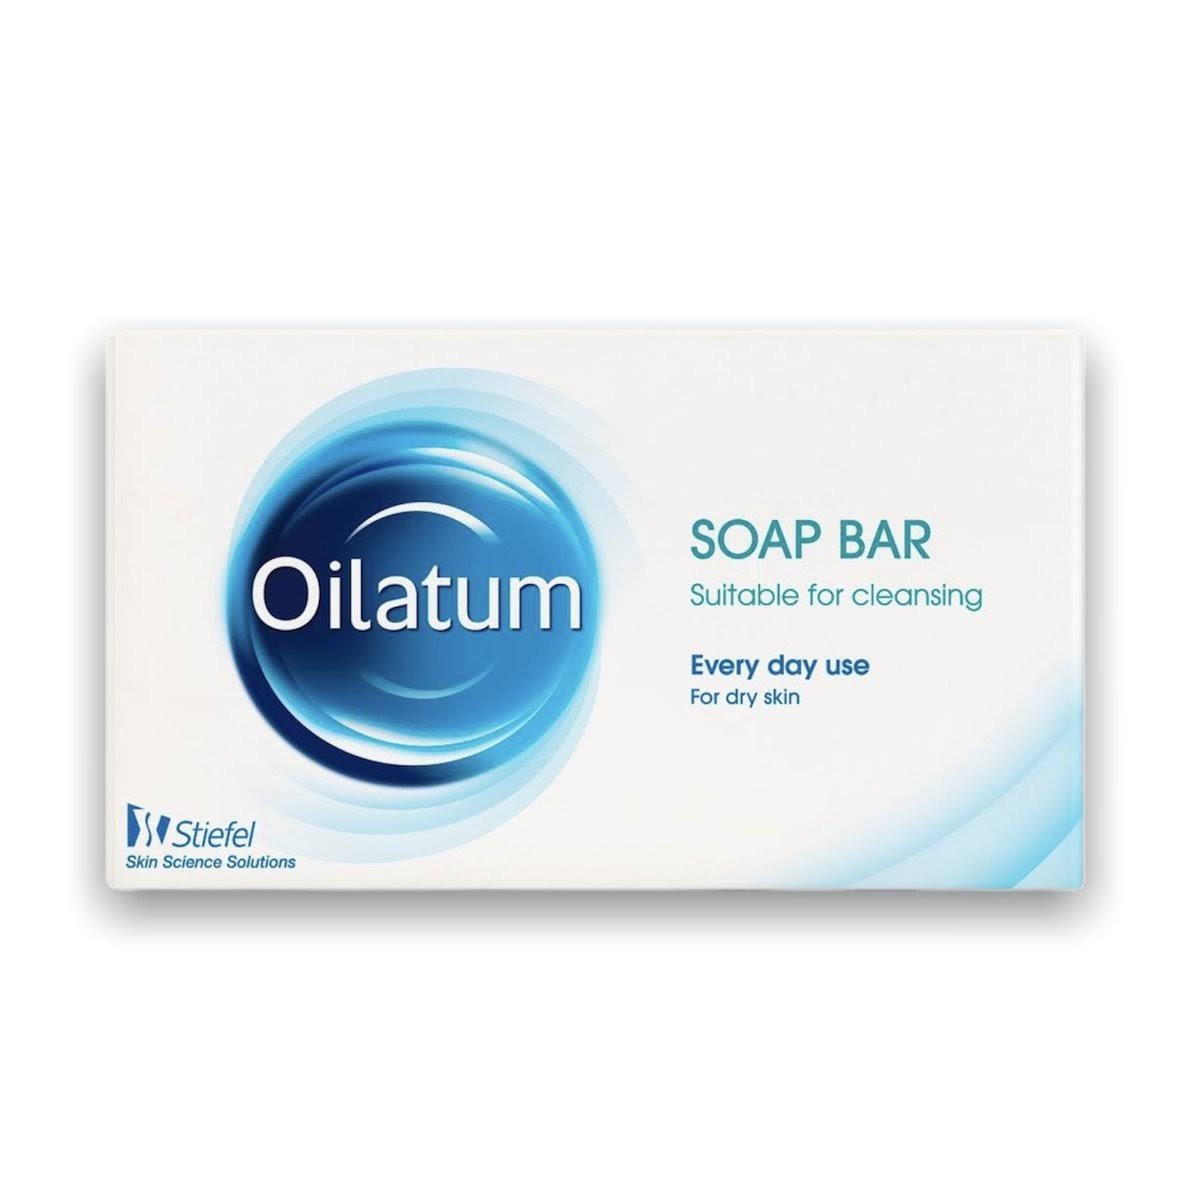 Oilatum 100g Soap Bar for Dry Skin